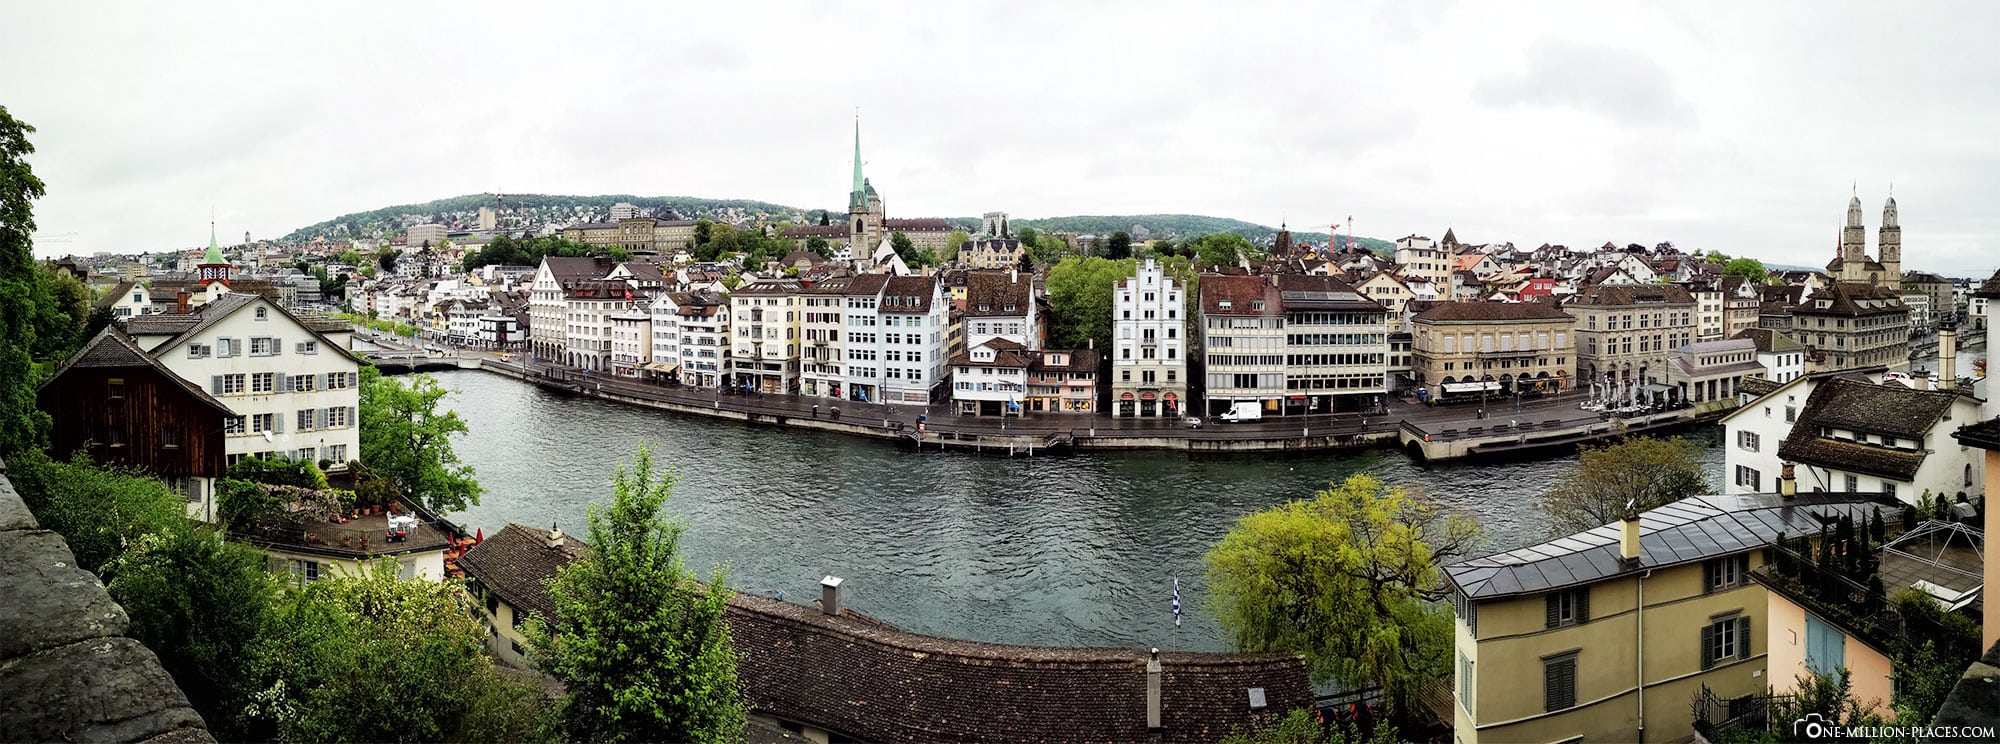 Panorama, Lindenhof, View, Zurich, Old Town, Sights, Photo spots, Switzerland, Travel Blog